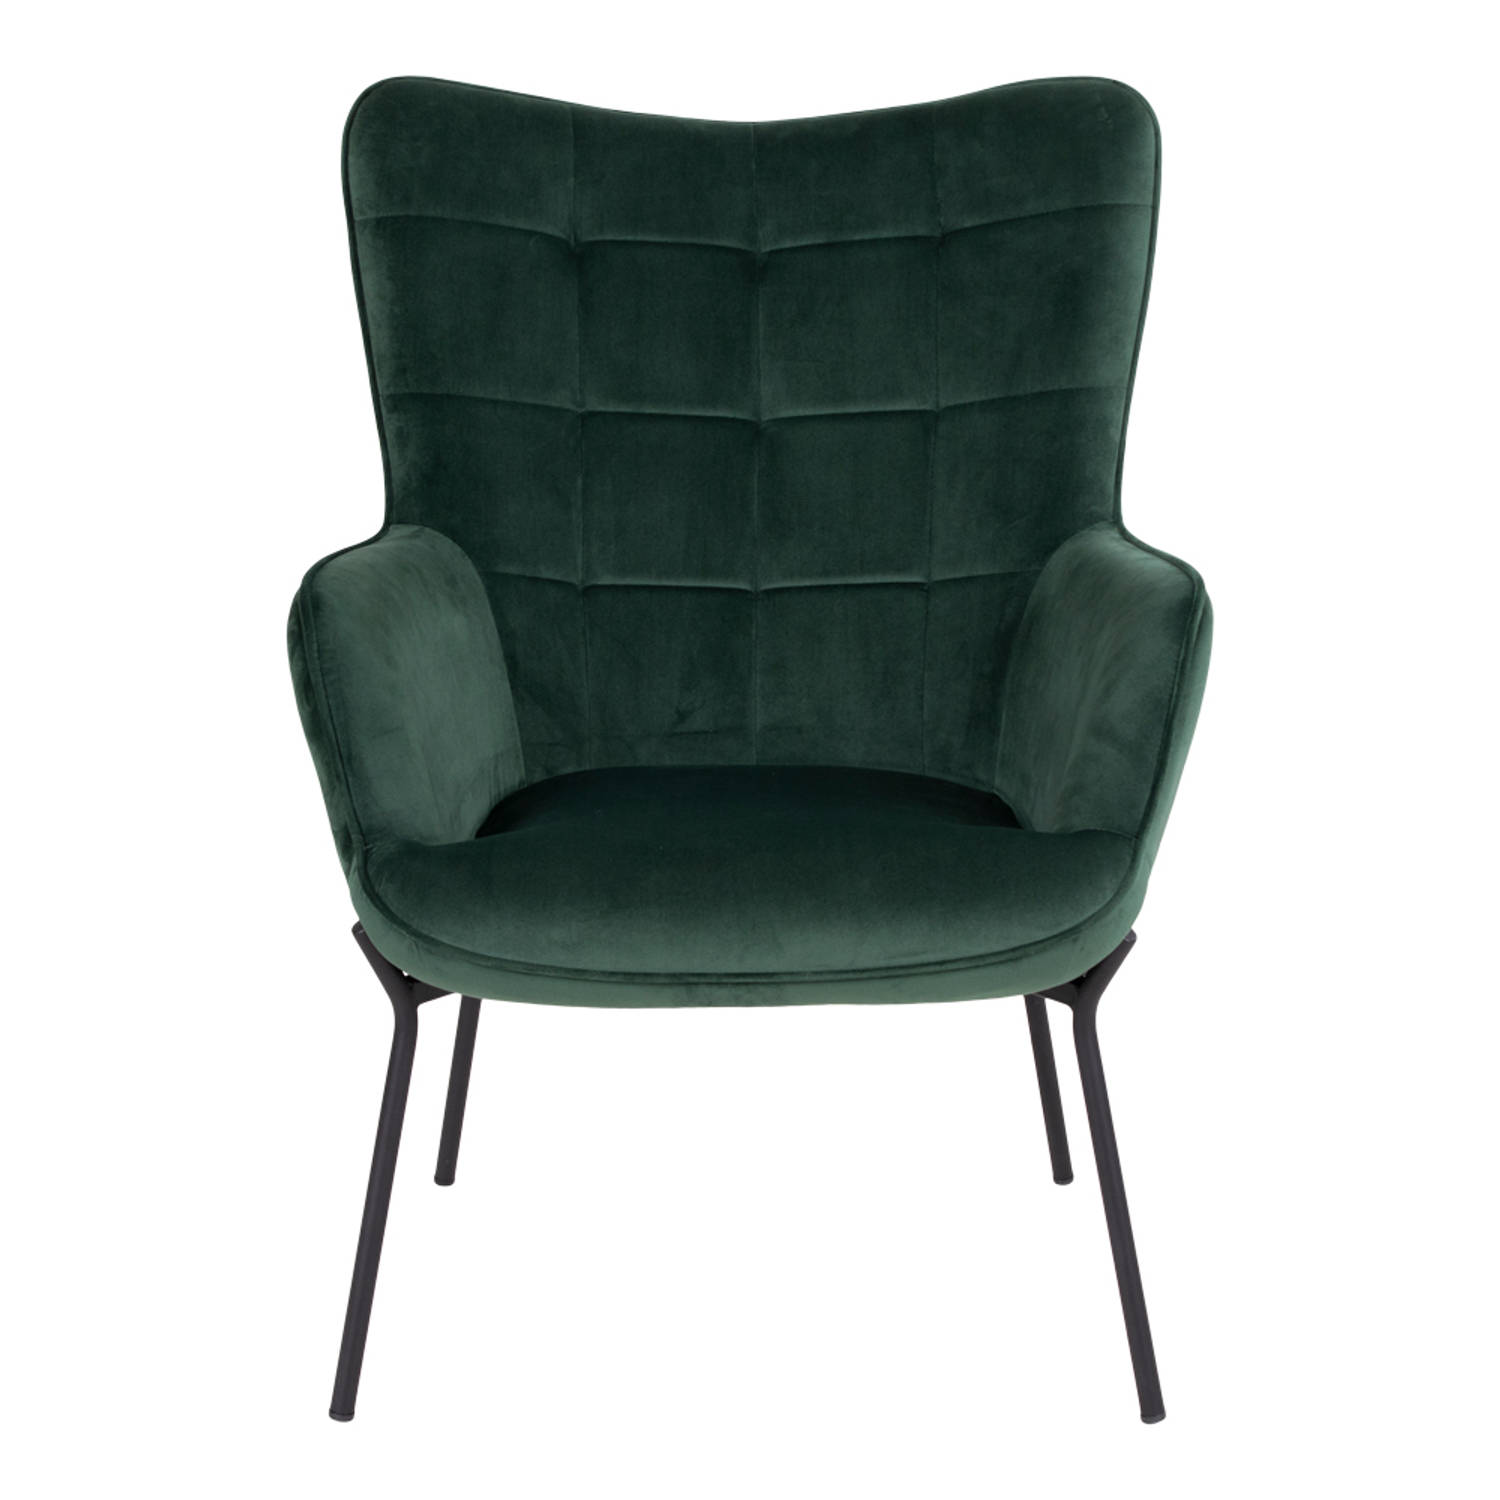 Bestuiven ethisch vermoeidheid Glow fauteuil groen velours, zwarte poten. | Blokker